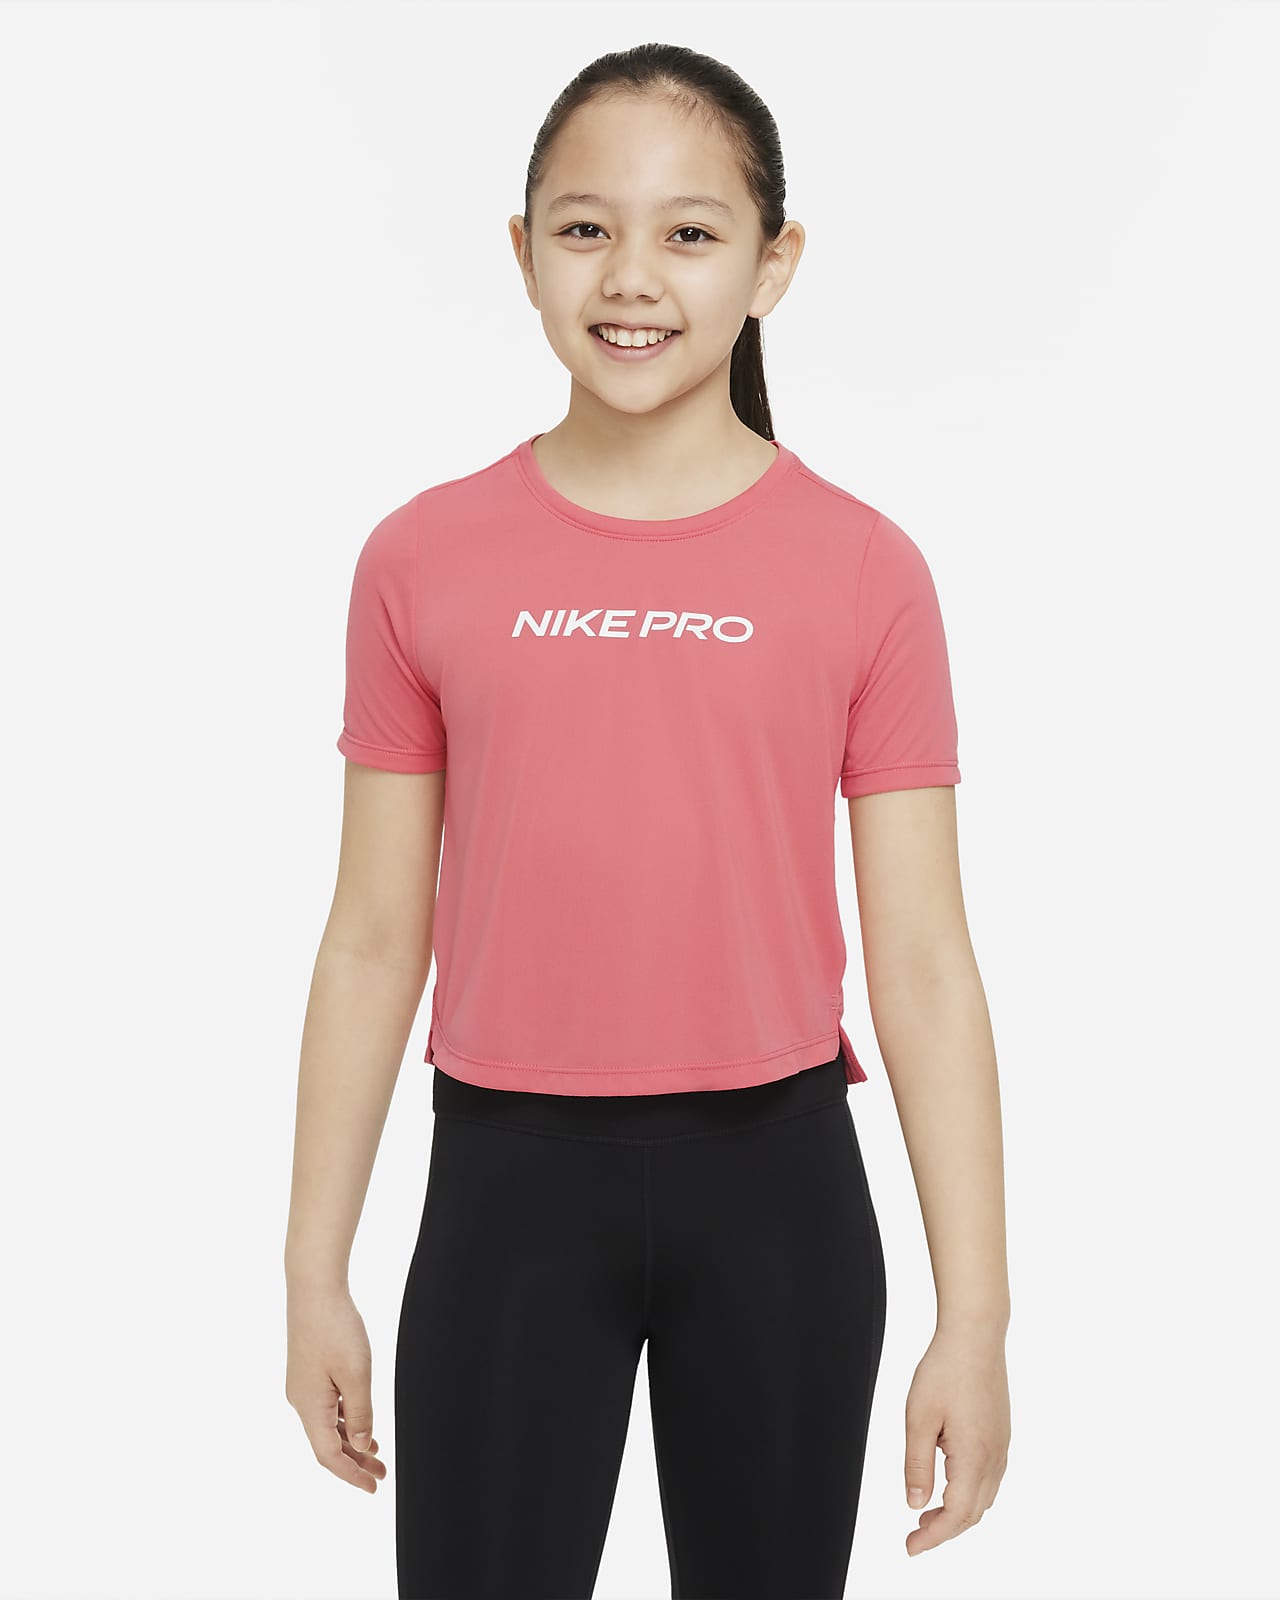 Tröja Nike Pro Dri-FIT One för ungdom (tjejer)